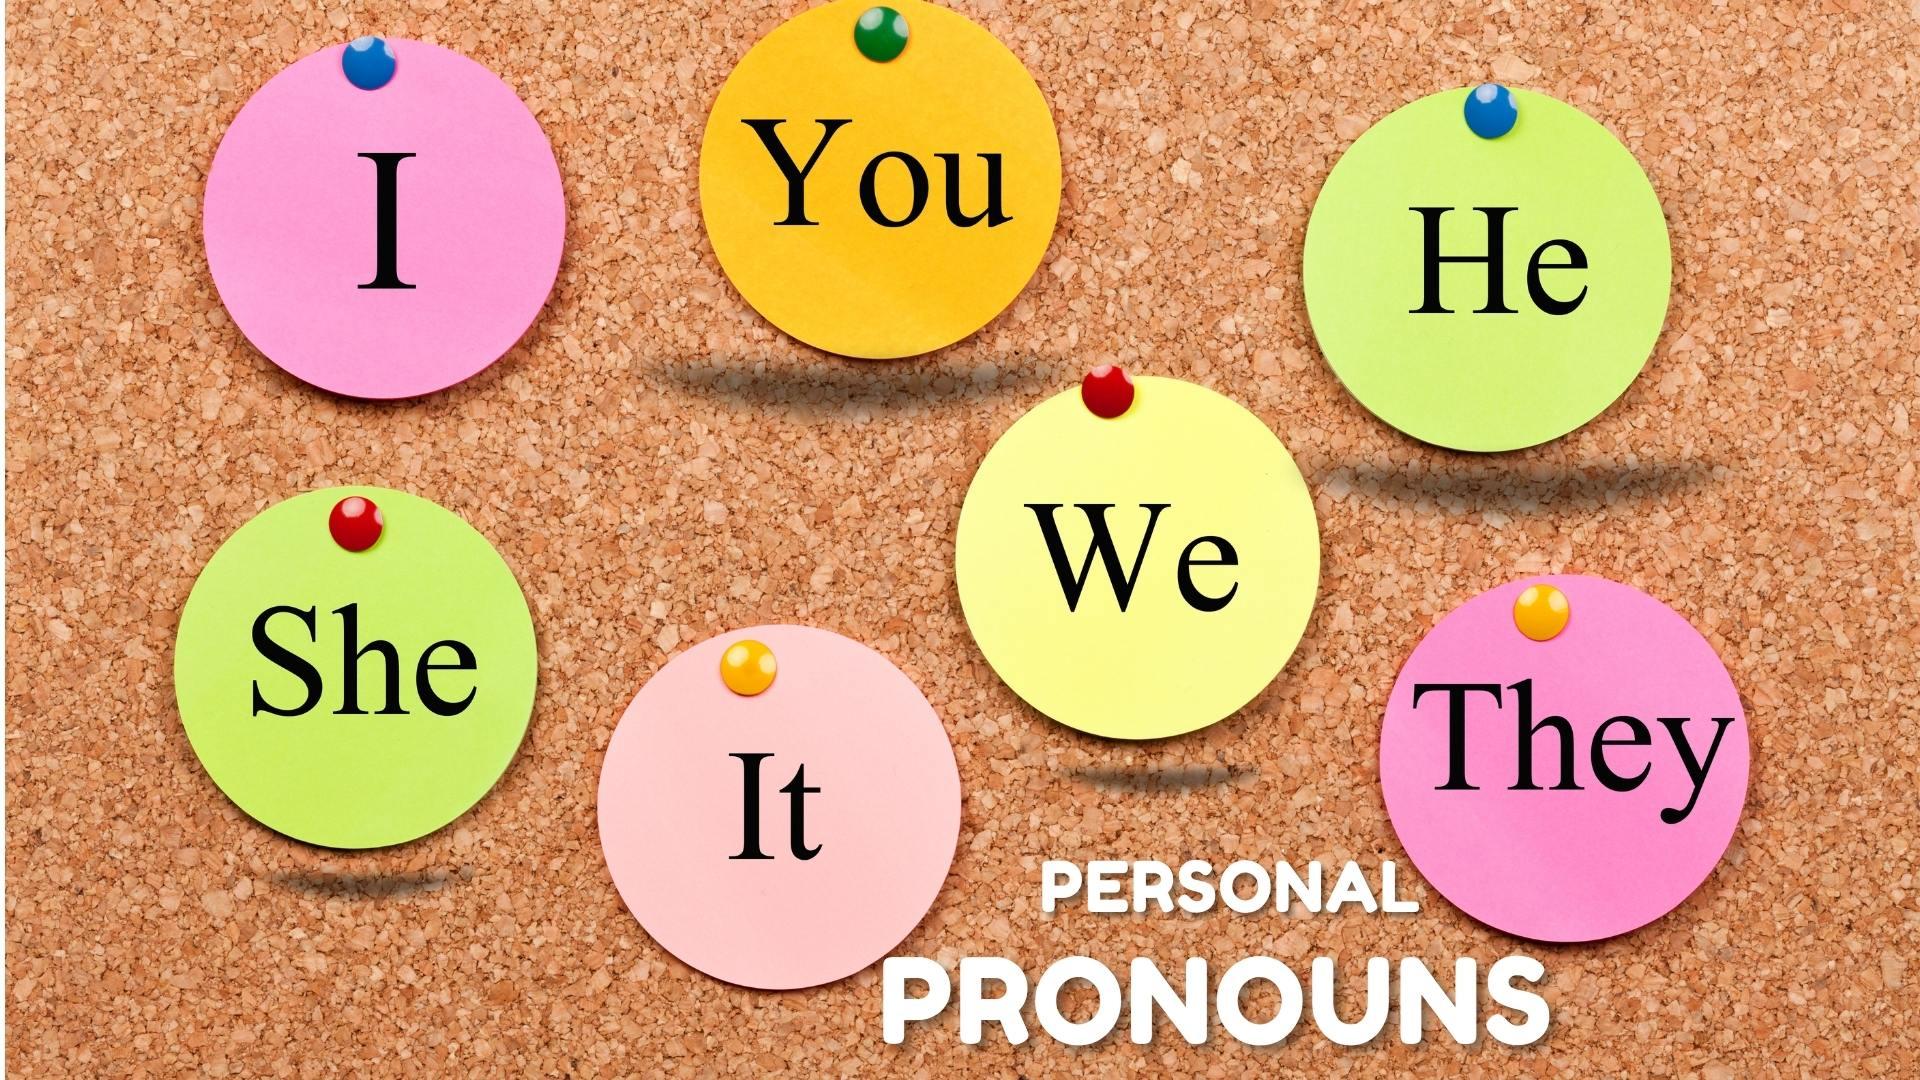 1- Escreva três pronomes pessoais(personal pronouns). da letra da musica  2-escreva dois verbos que estão 